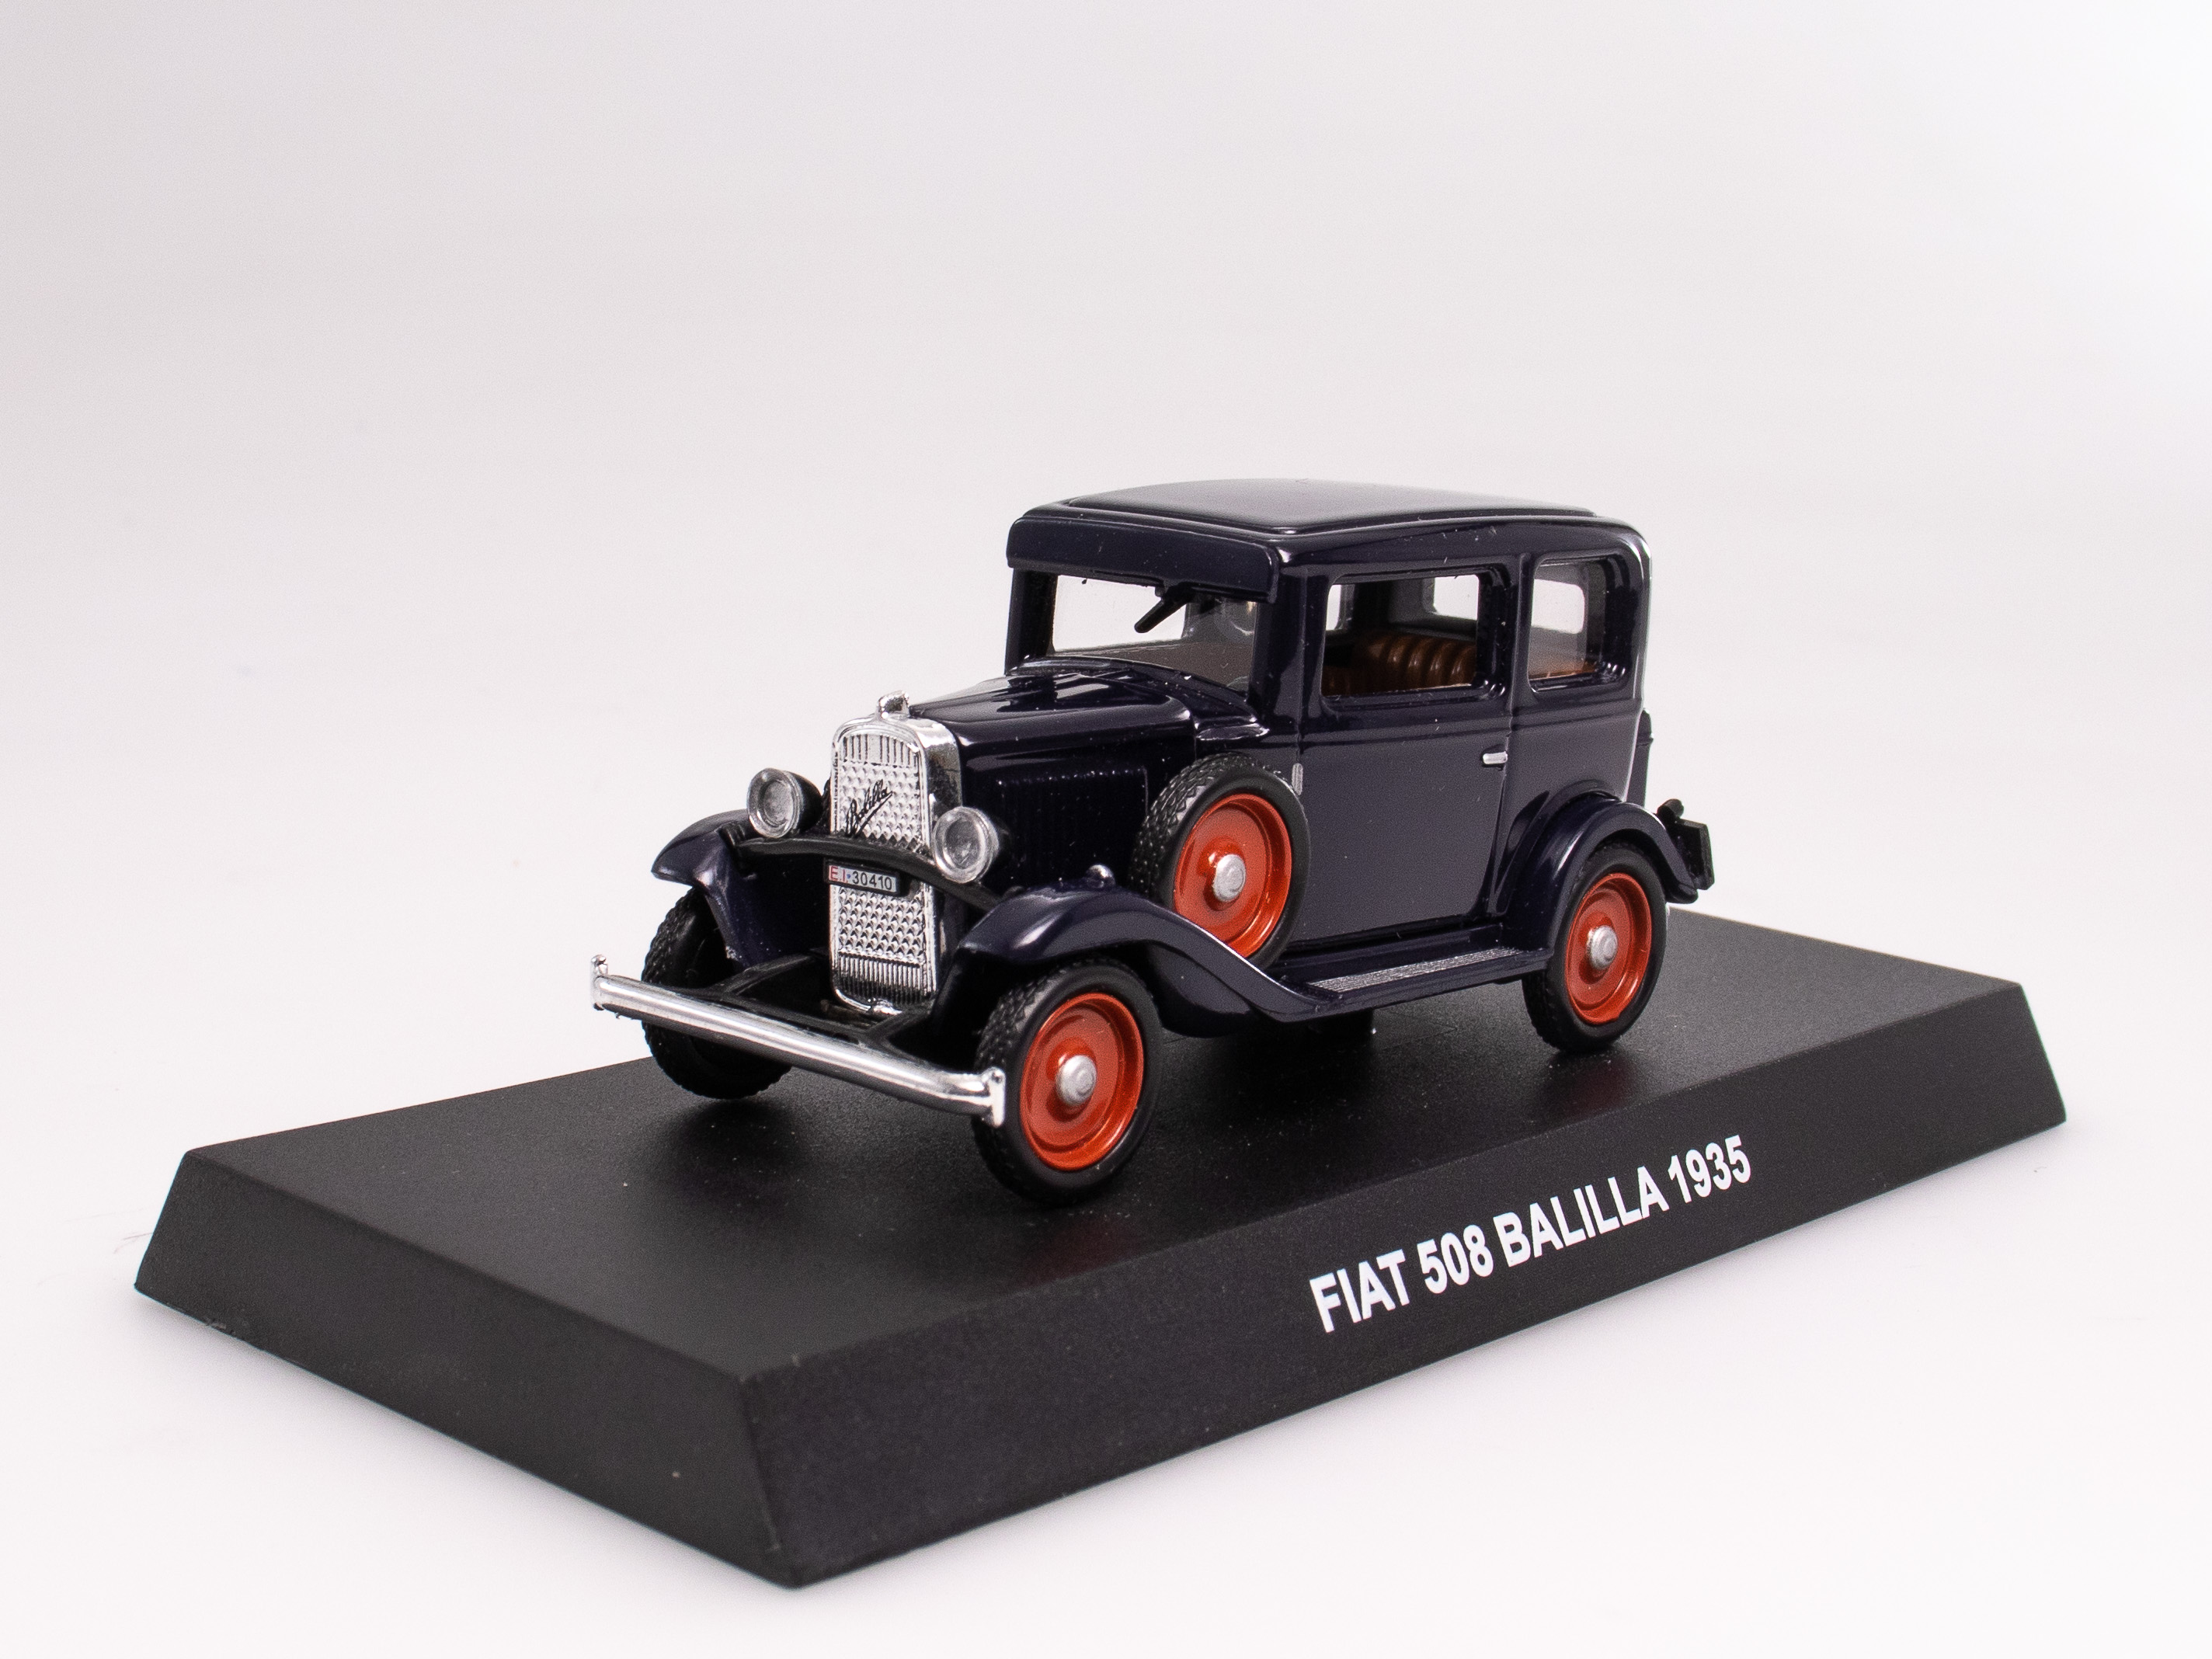 FIAT 500 BALILLA 1935